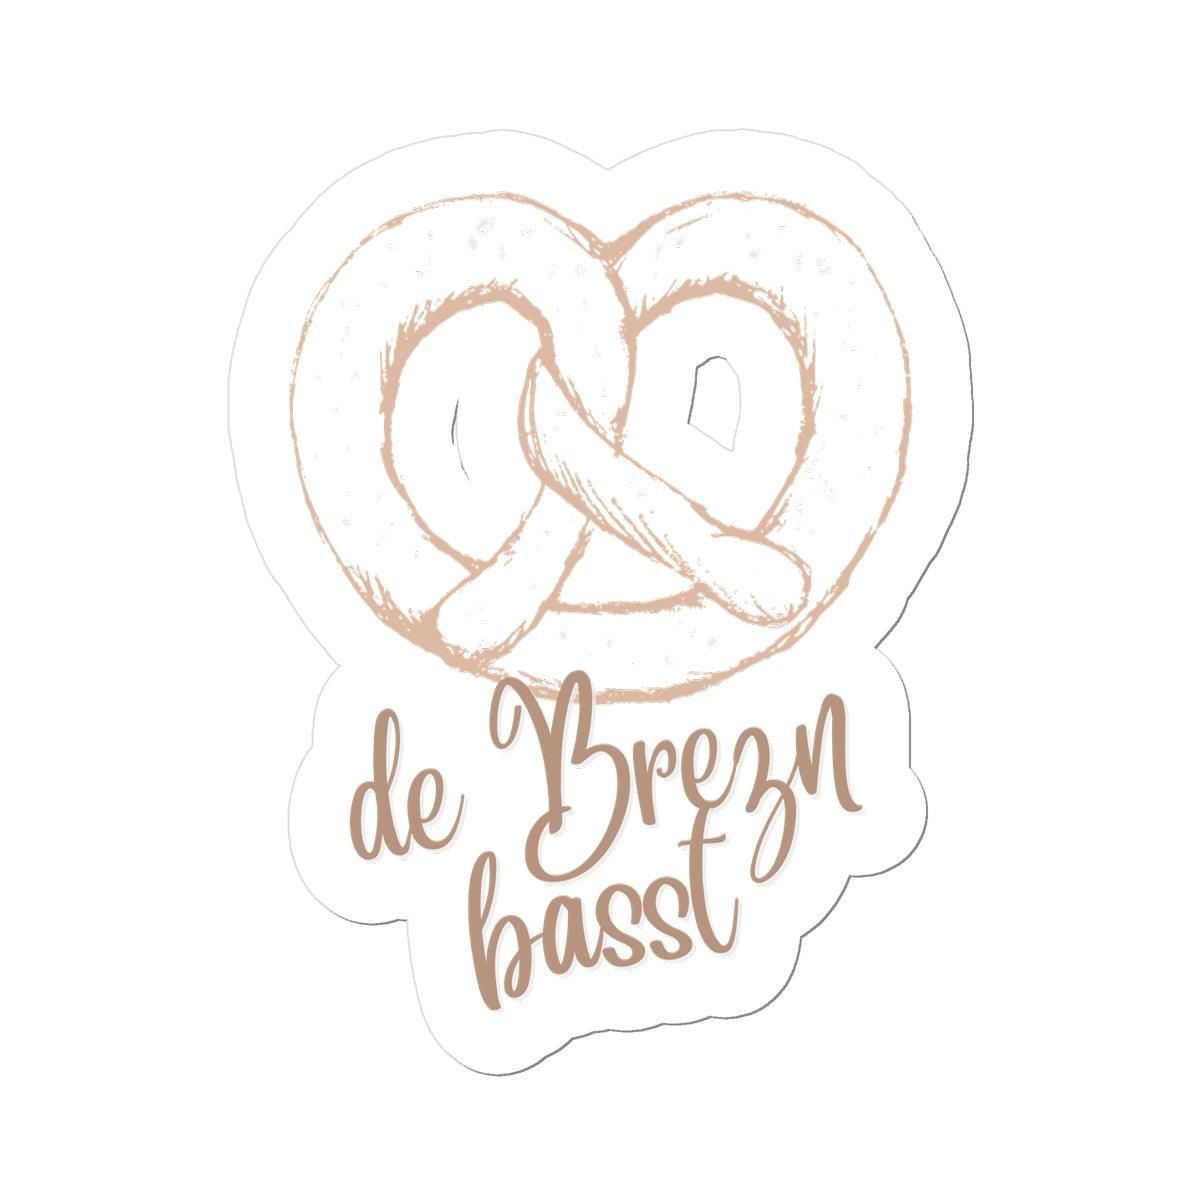 Bavarian Statement Sticker "Brezn basst" vinyl, 4 sizes - White - Bavari Shop - Bavarian Outfits, Dirndl, Lederhosen & Accessories